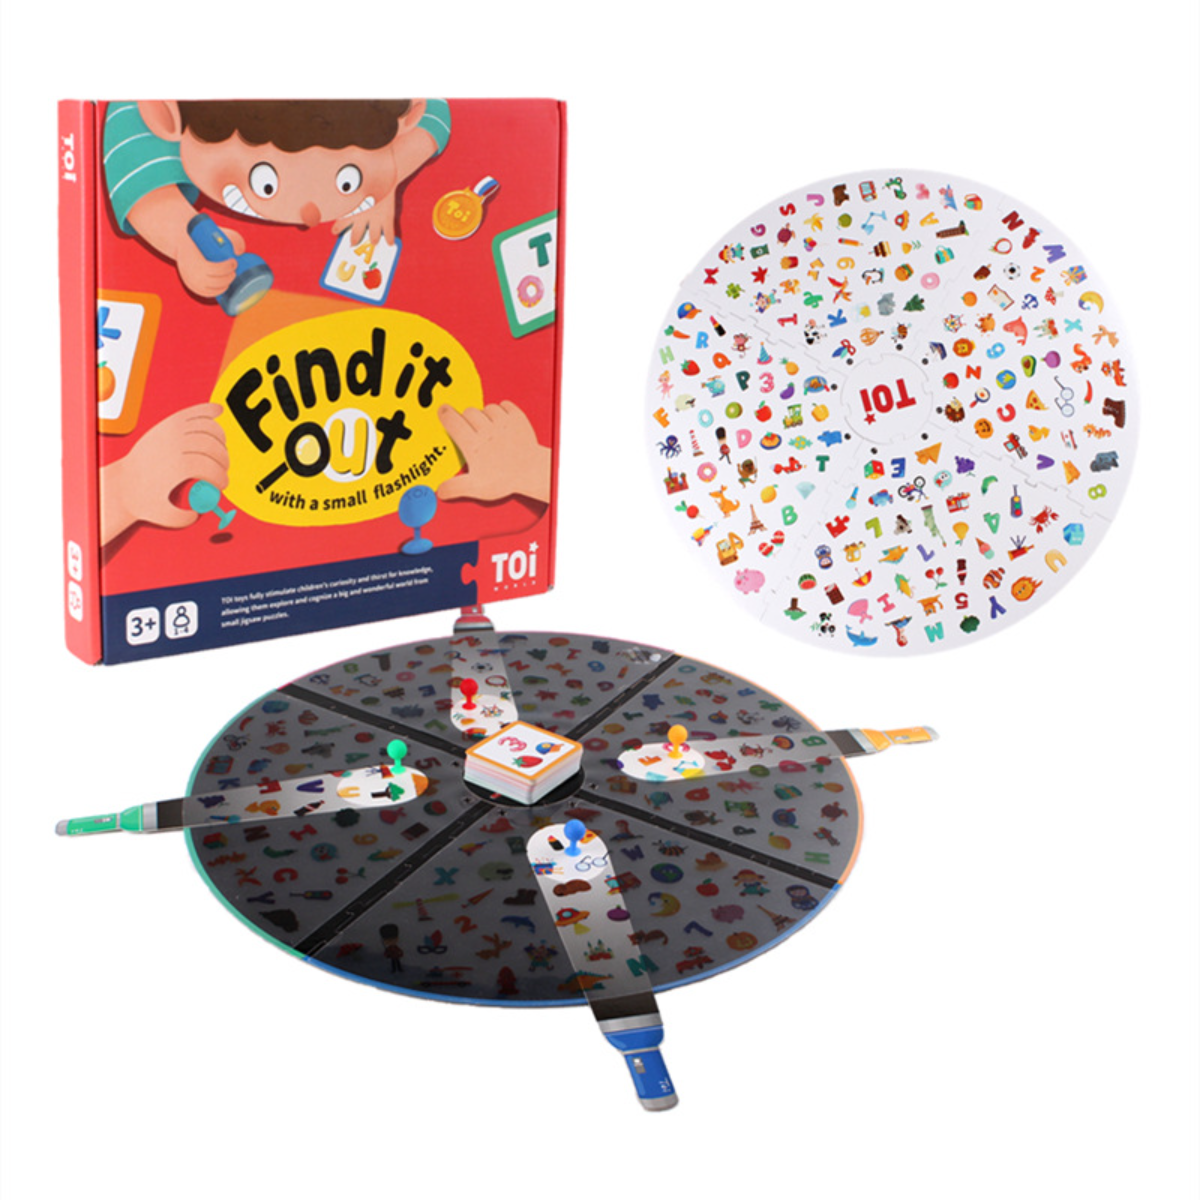 『子供のボードゲーム』 懐中電灯で色んなものを見つけて集める！ボードゲーム｜みんなで一緒に照らして！子供の手と目の協調性や脳の発達に役立つ|undefined